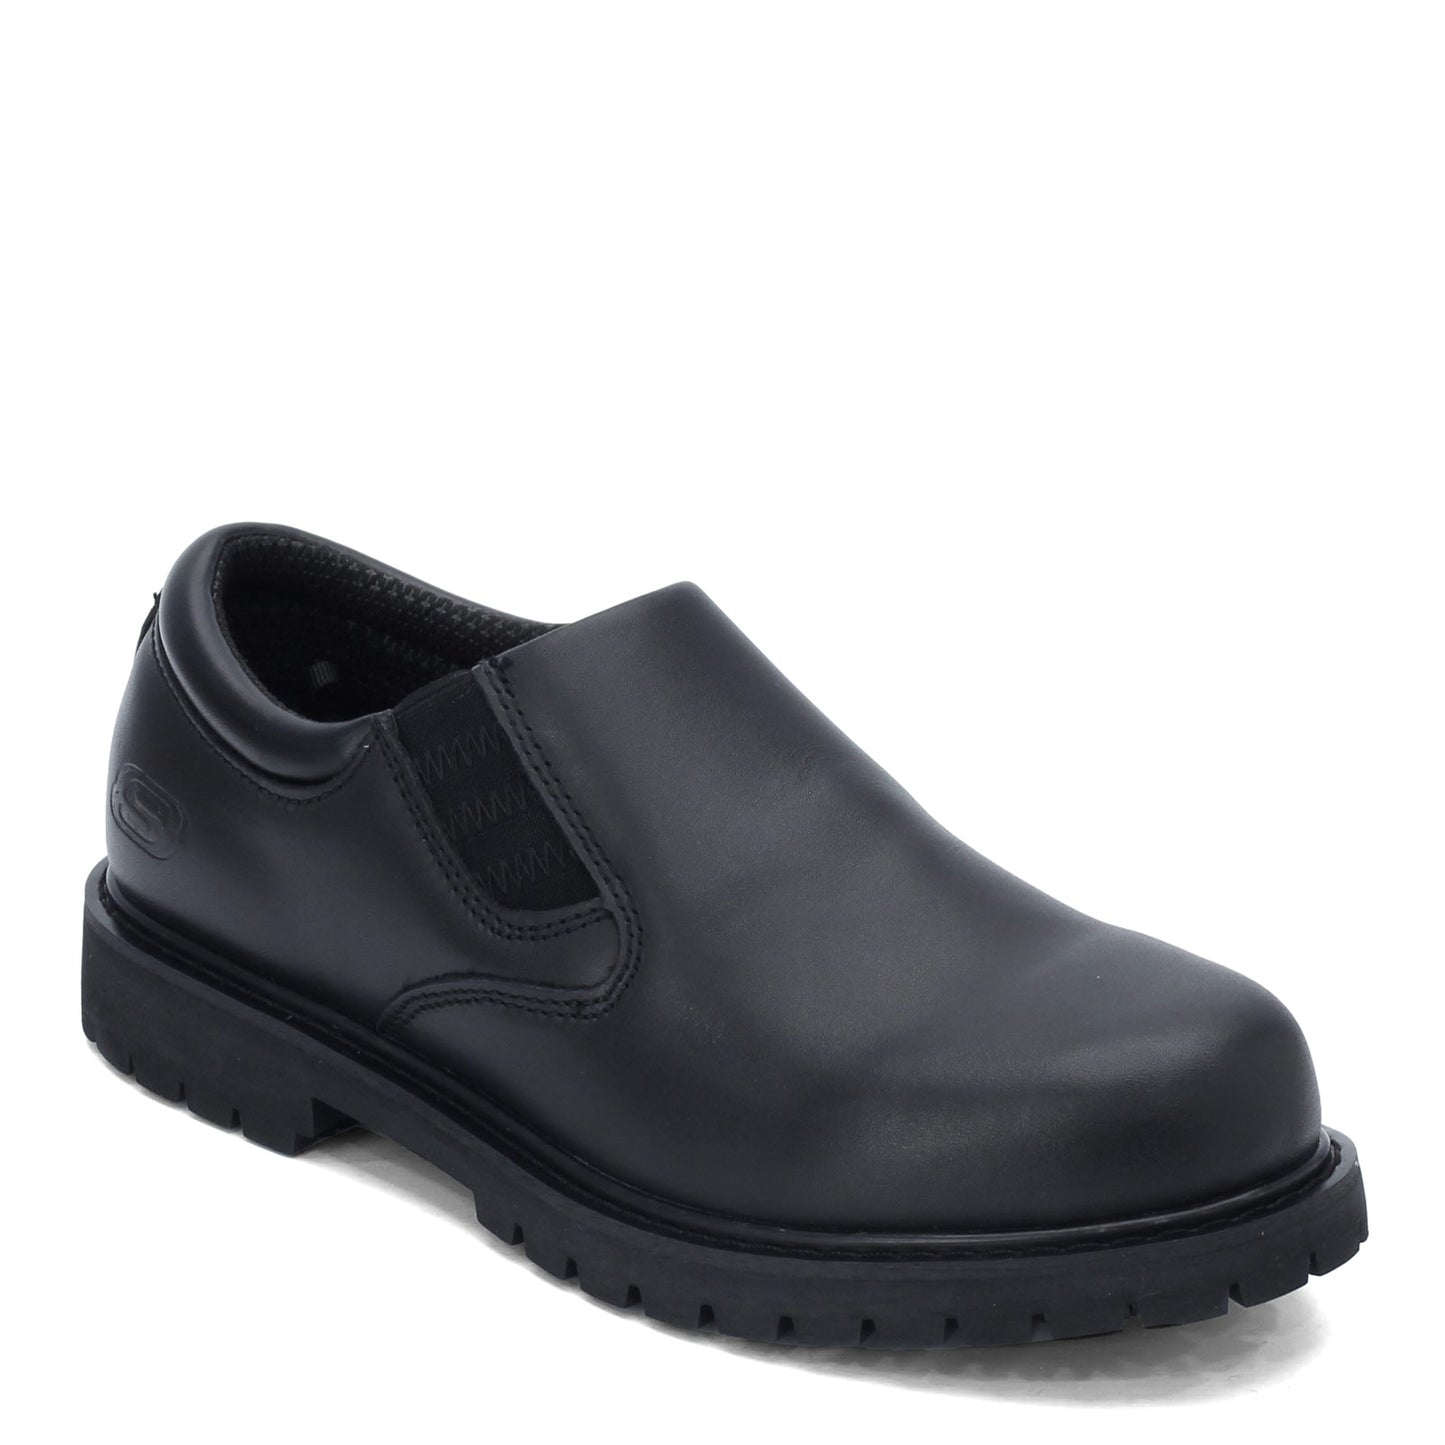 Peltz Shoes  Men's Skechers Cottonwood Goddard SR Work Shoe - Wide Width BLACK 77046EW-BLK